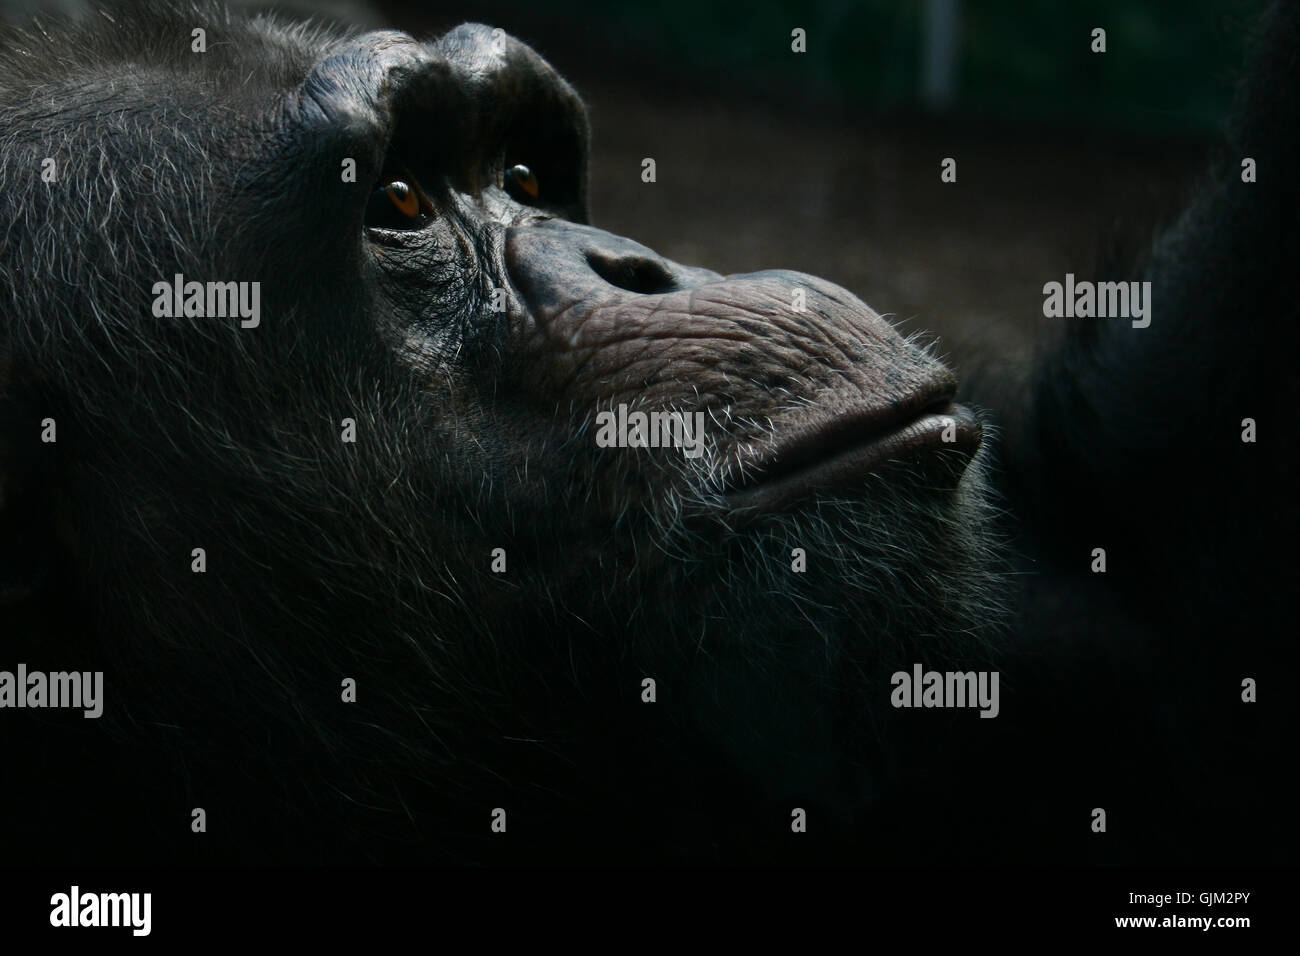 animal face monkey Stock Photo